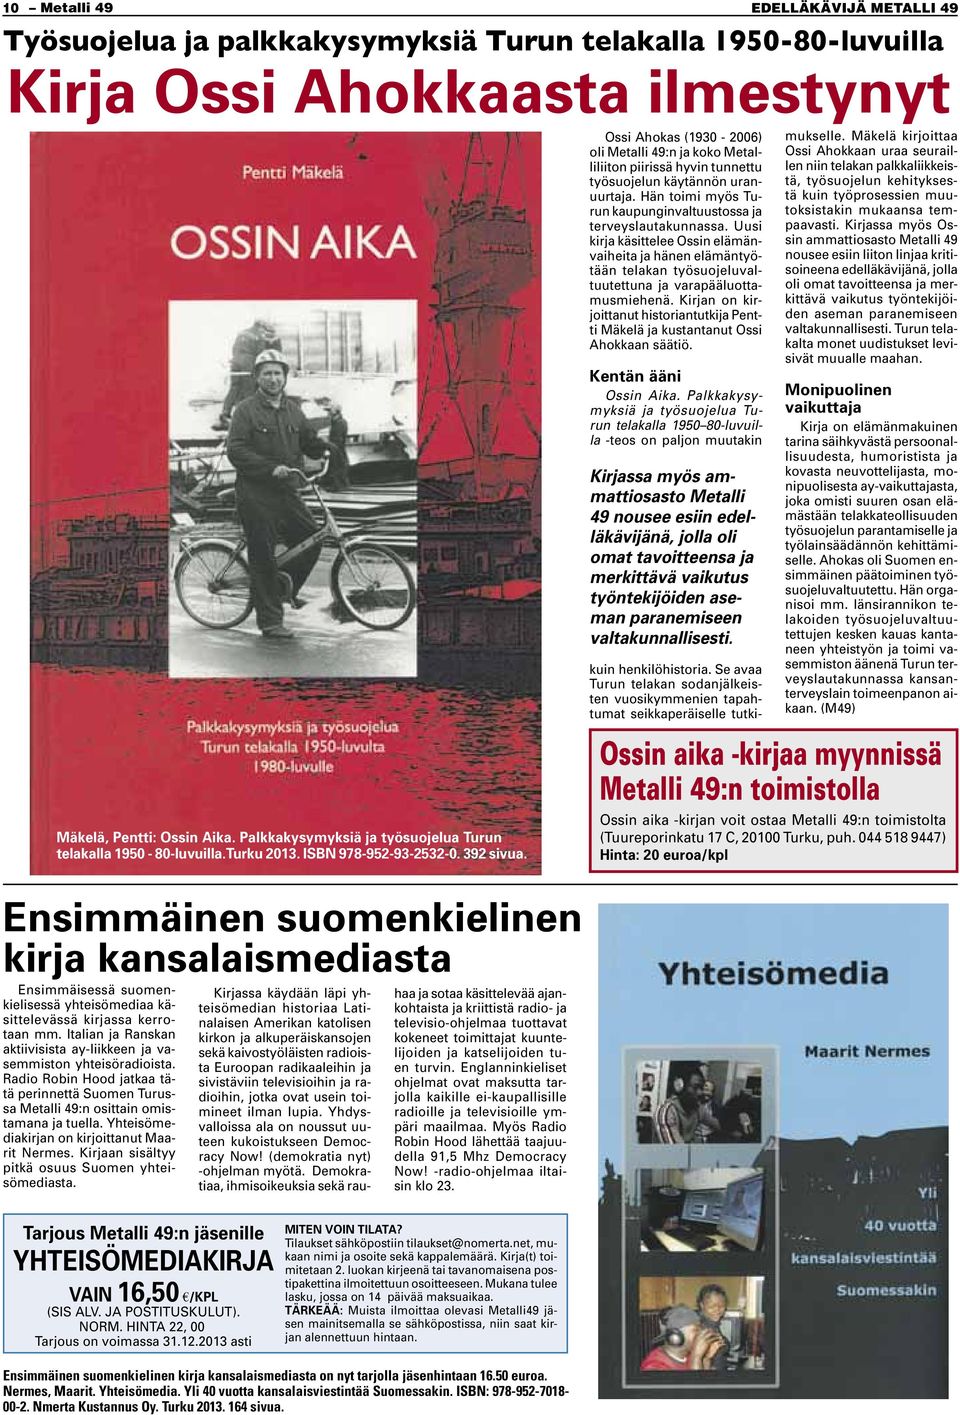 Ossi Ahokas (1930-2006) oli Metalli 49:n ja koko Metalliliiton piirissä hyvin tunnettu työsuojelun käytännön uranuurtaja. Hän toimi myös Turun kaupunginvaltuustossa ja terveyslautakunnassa.